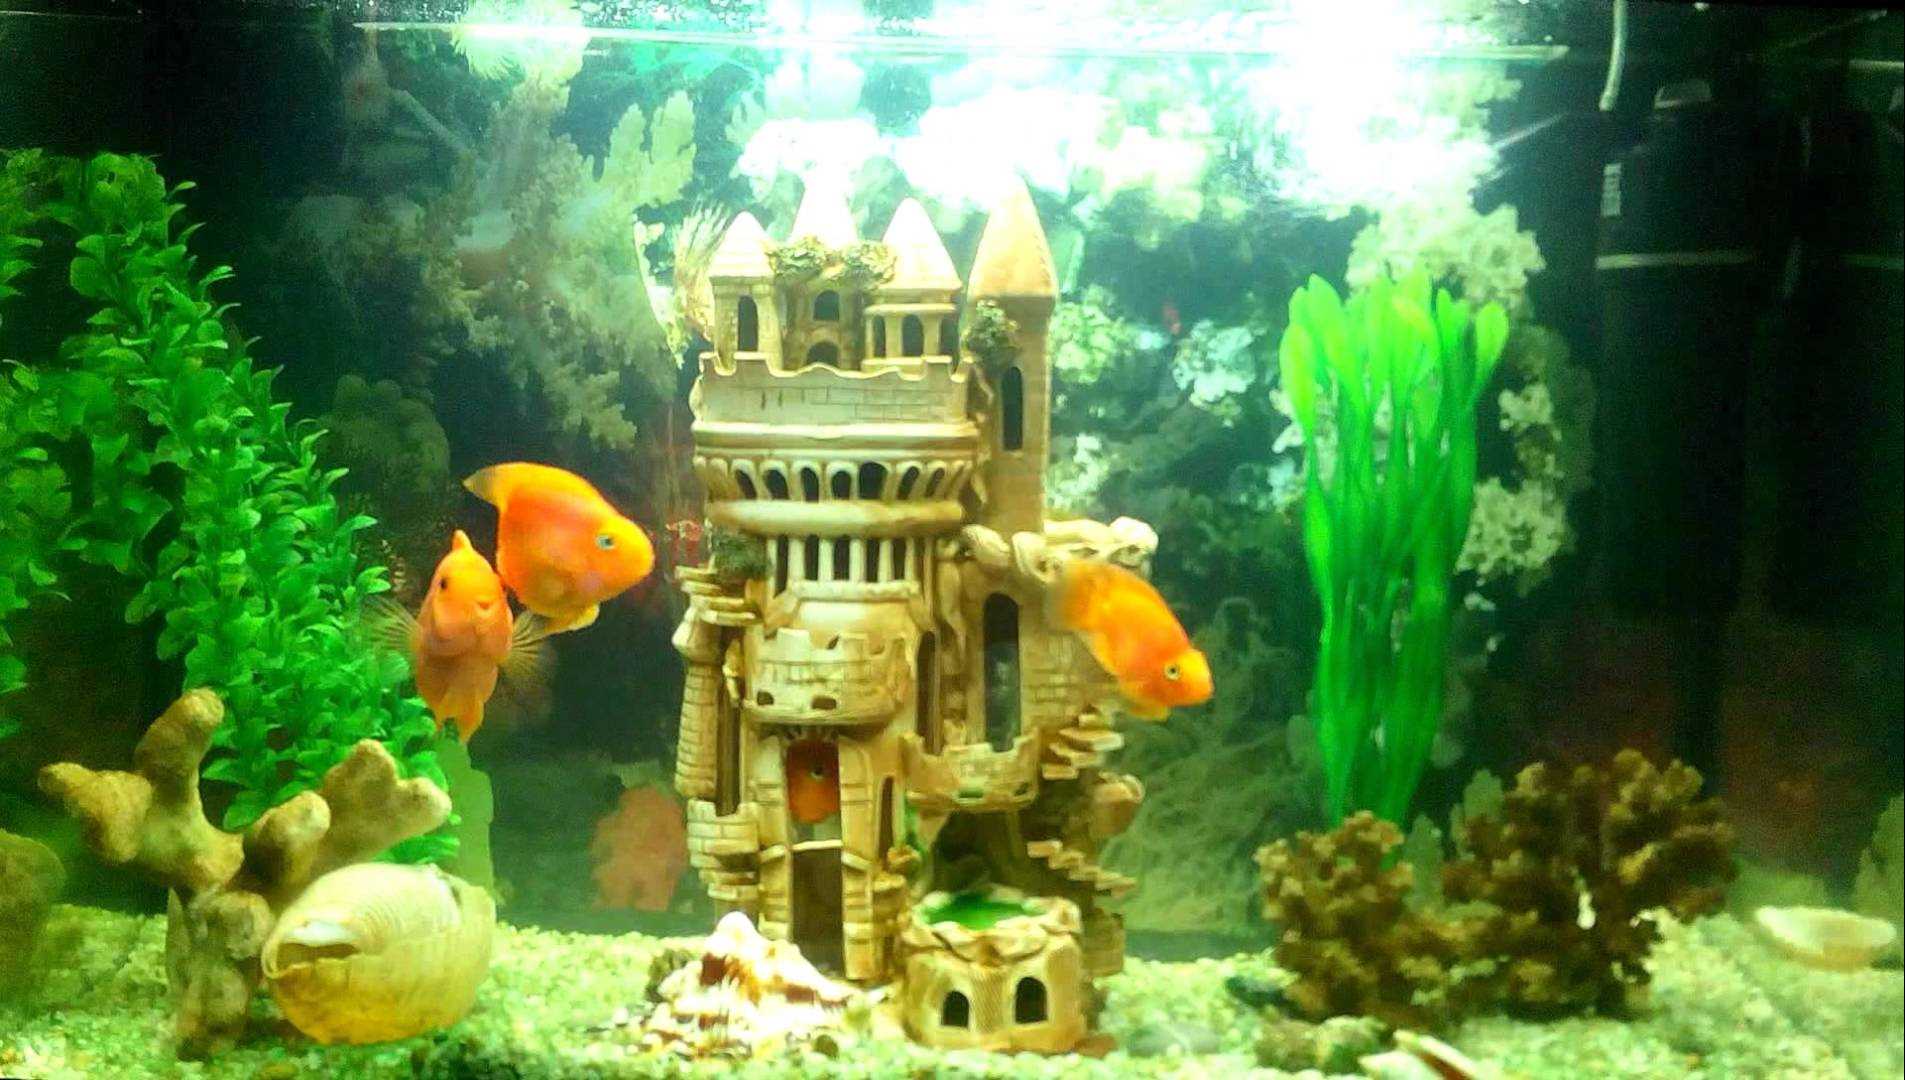 variant of unusual aquarium decoration